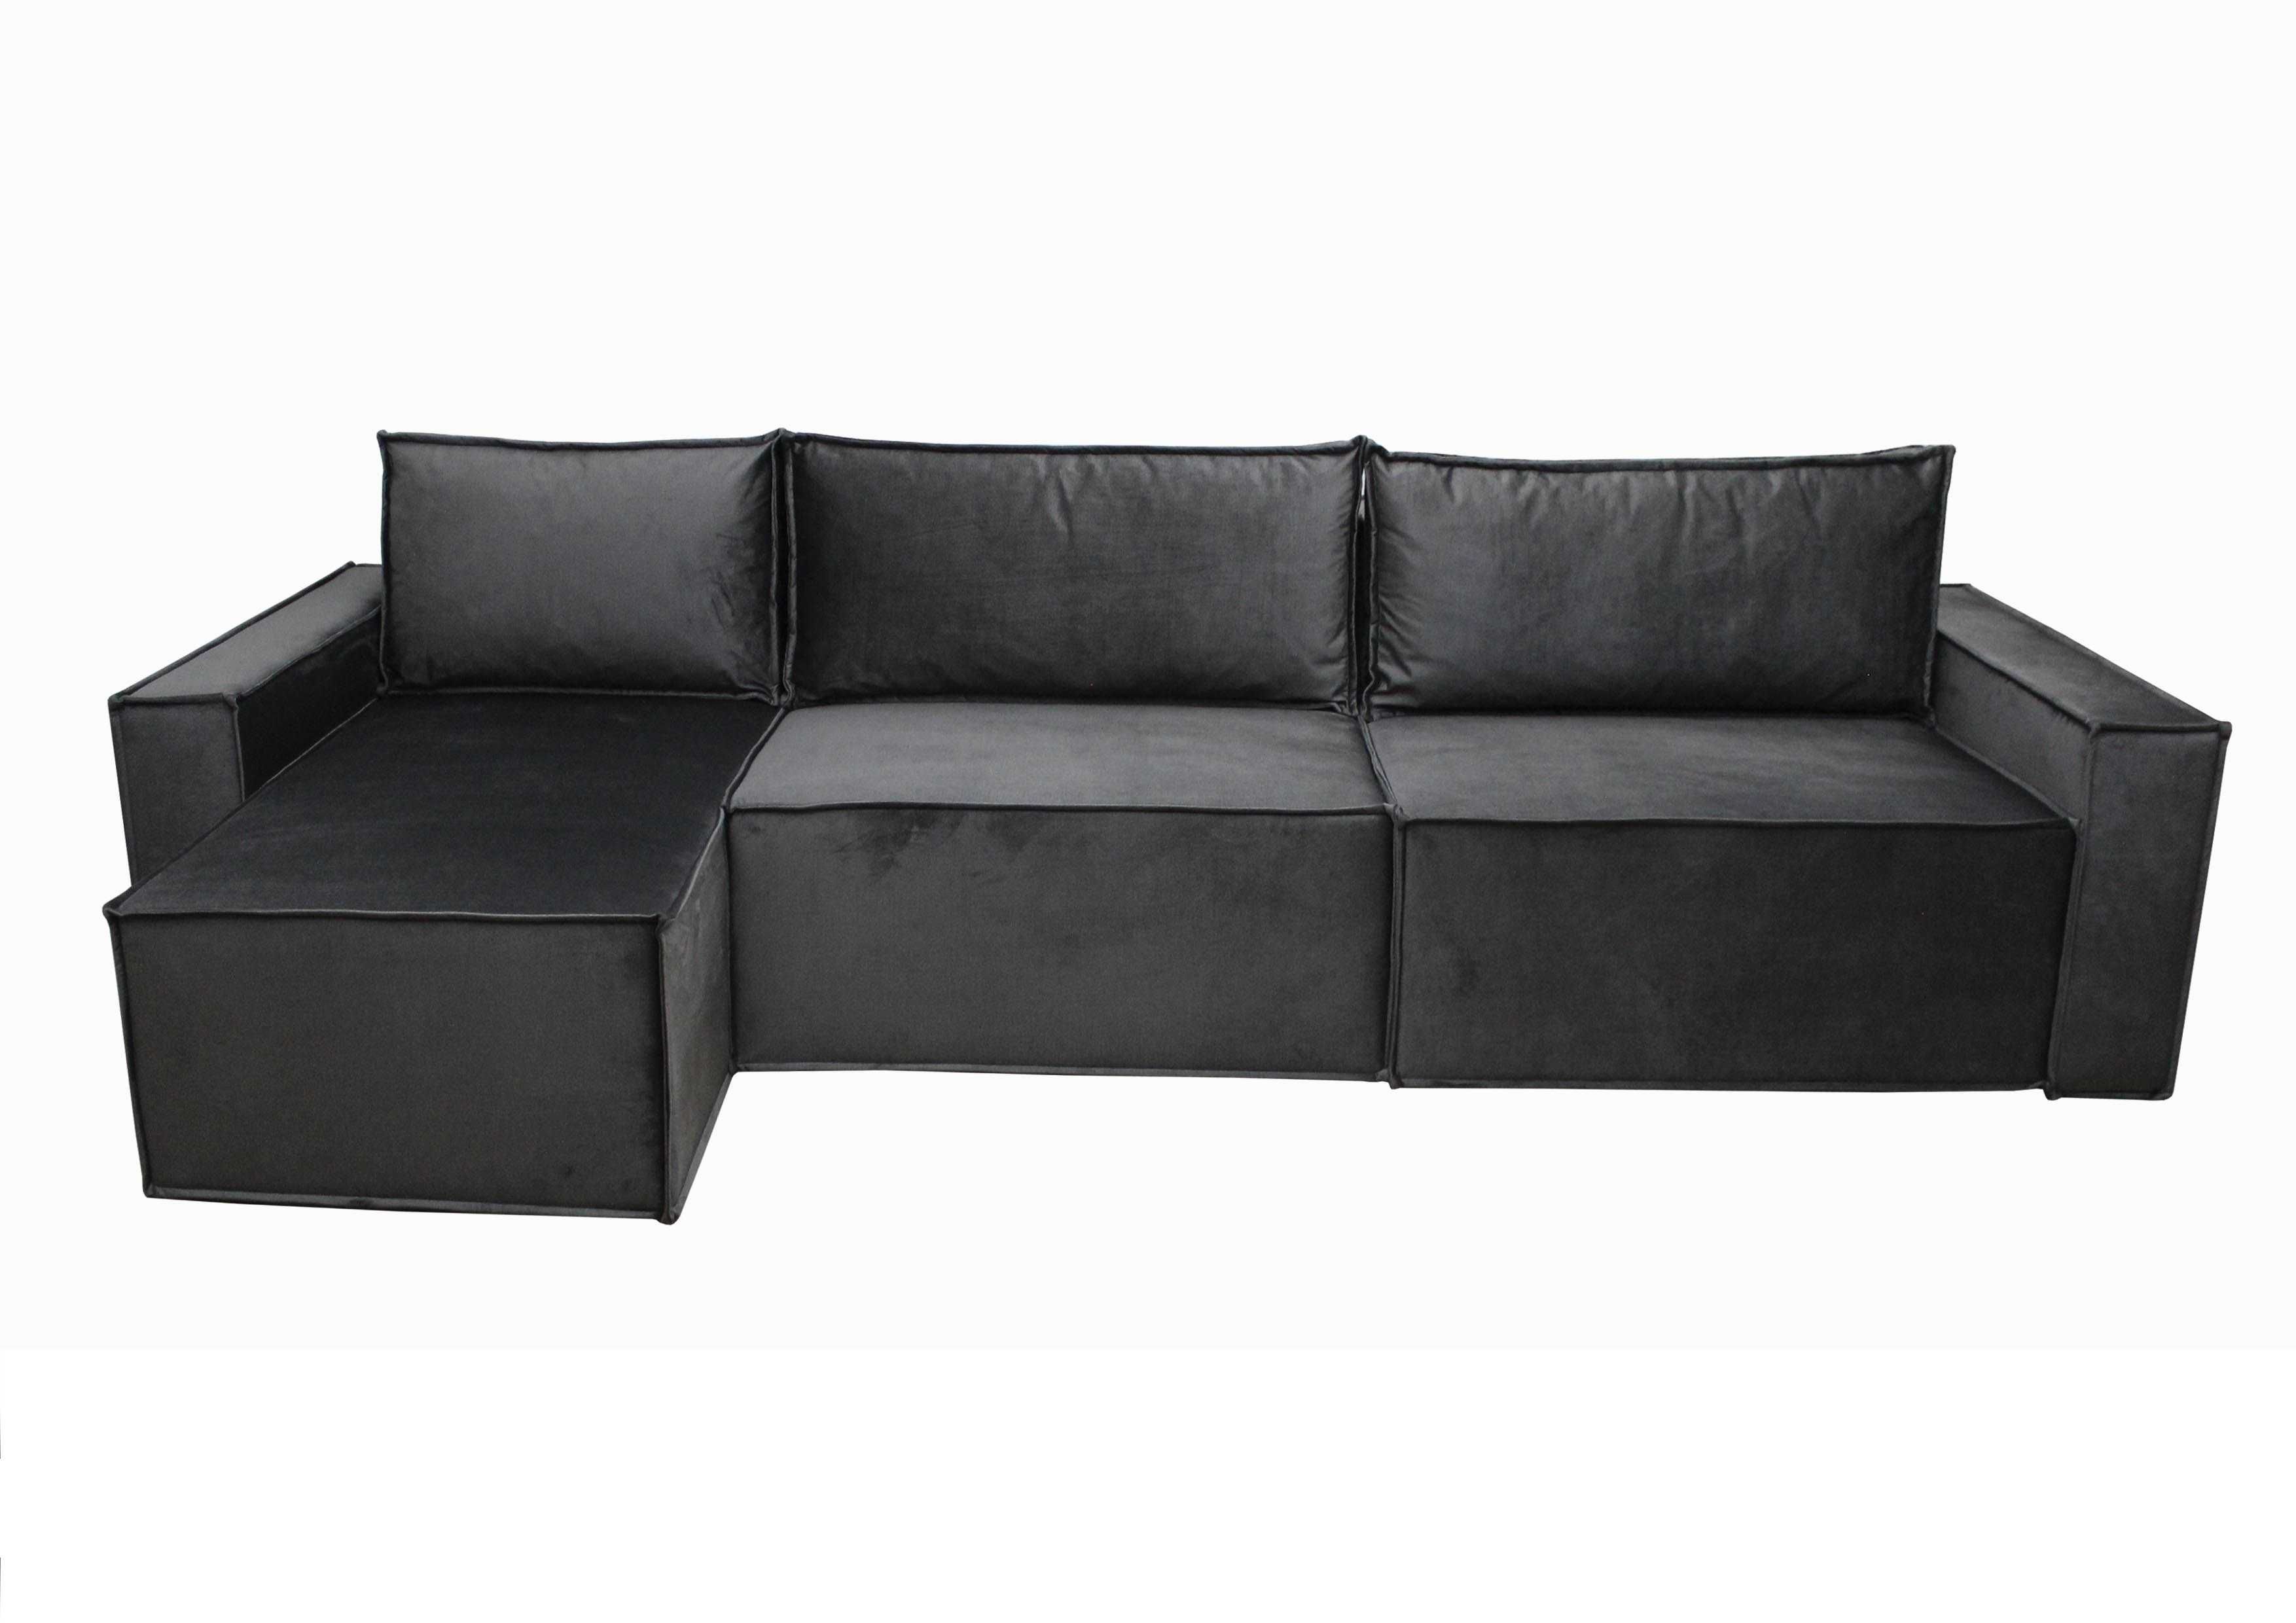 Угловой диван "Престиж 3 универсал" 355 см габаритная длина. Доставка